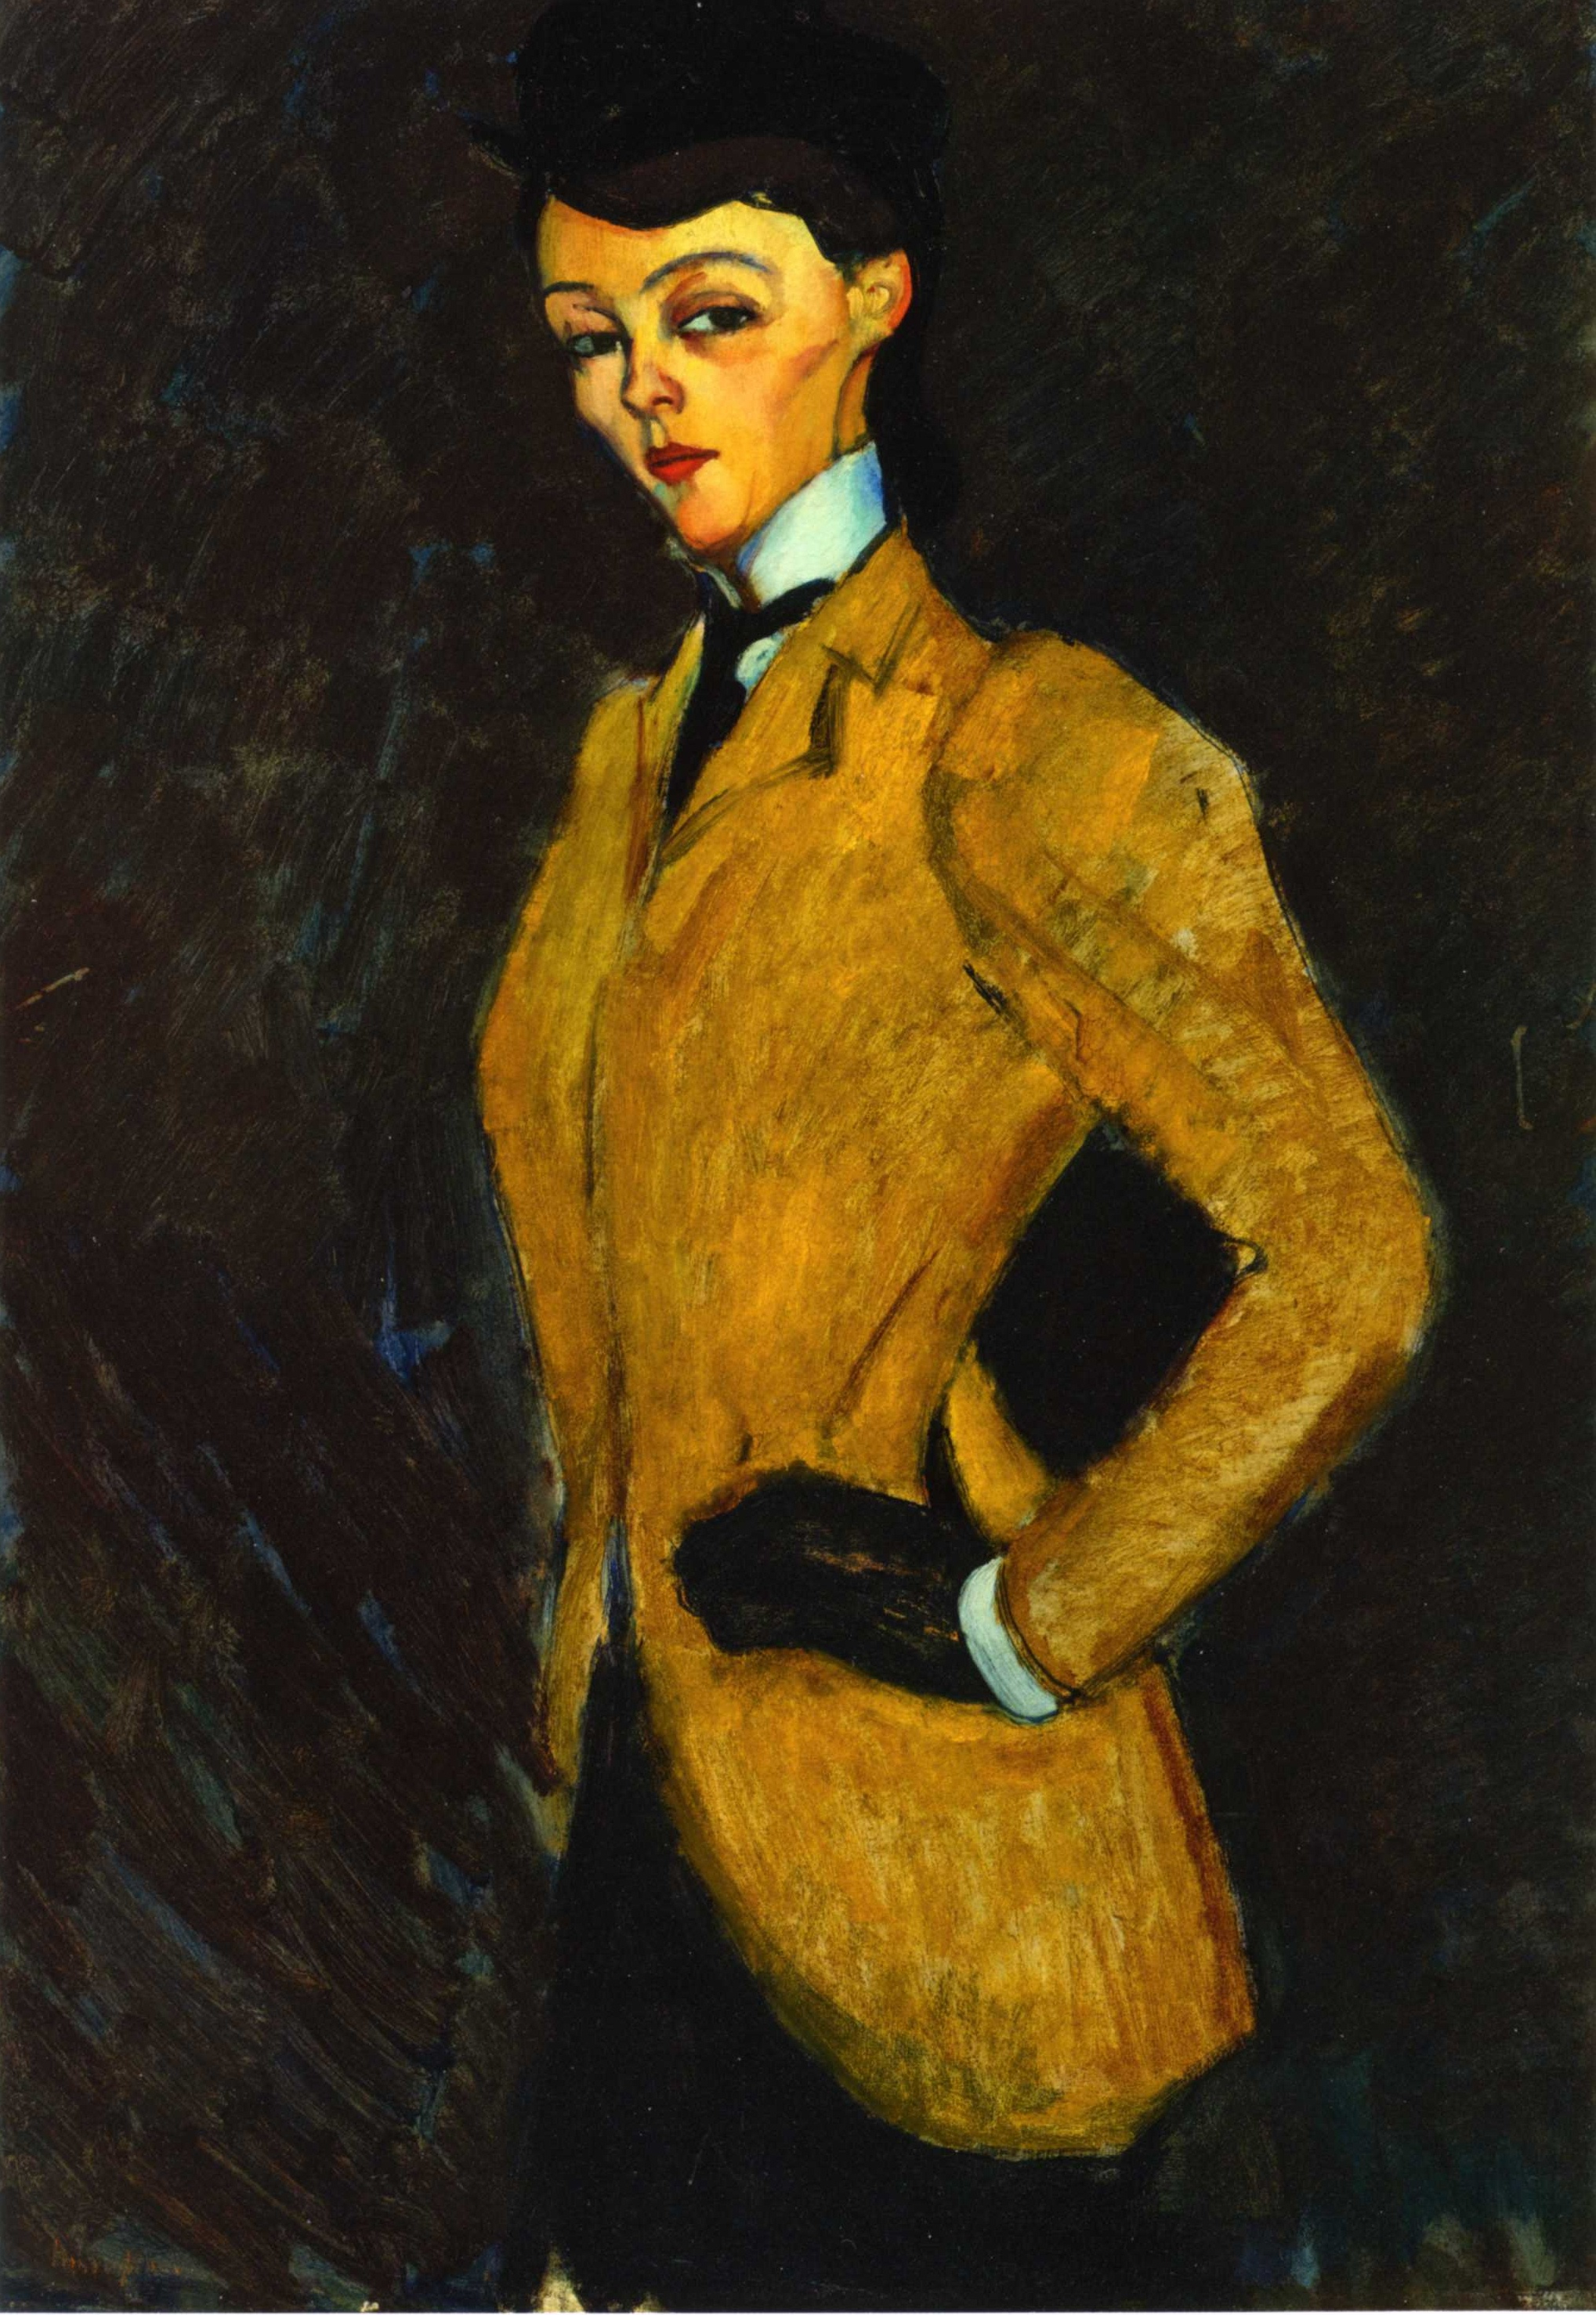 La amazona by Amedeo Modigliani - 1909 - 92 x 65.6 cm Colección privada